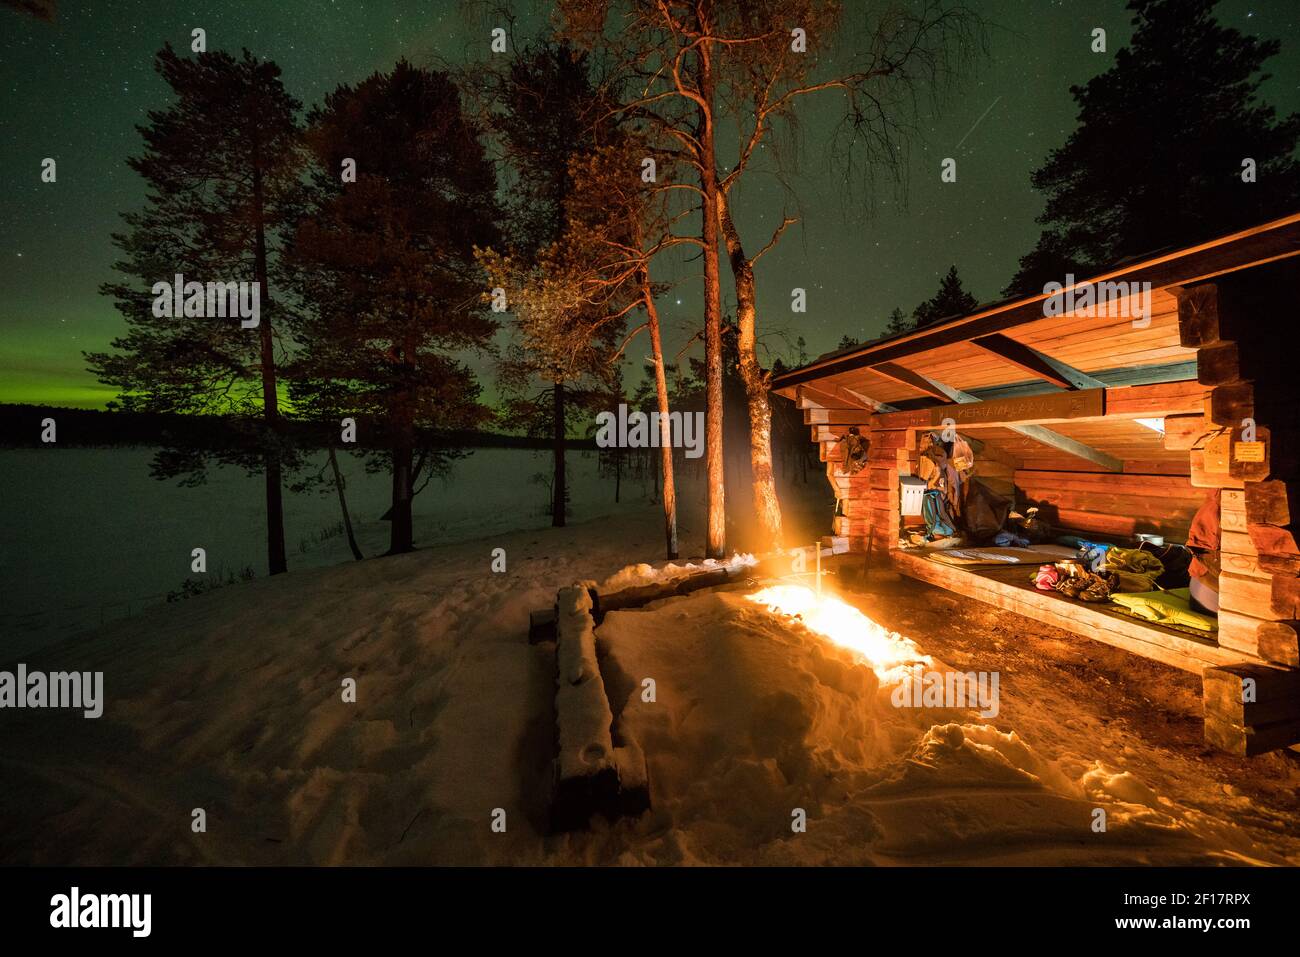 Spending the night at Kiertämäjärvi lean-to shelter, Sodankylä, Lapland, Finland Stock Photo